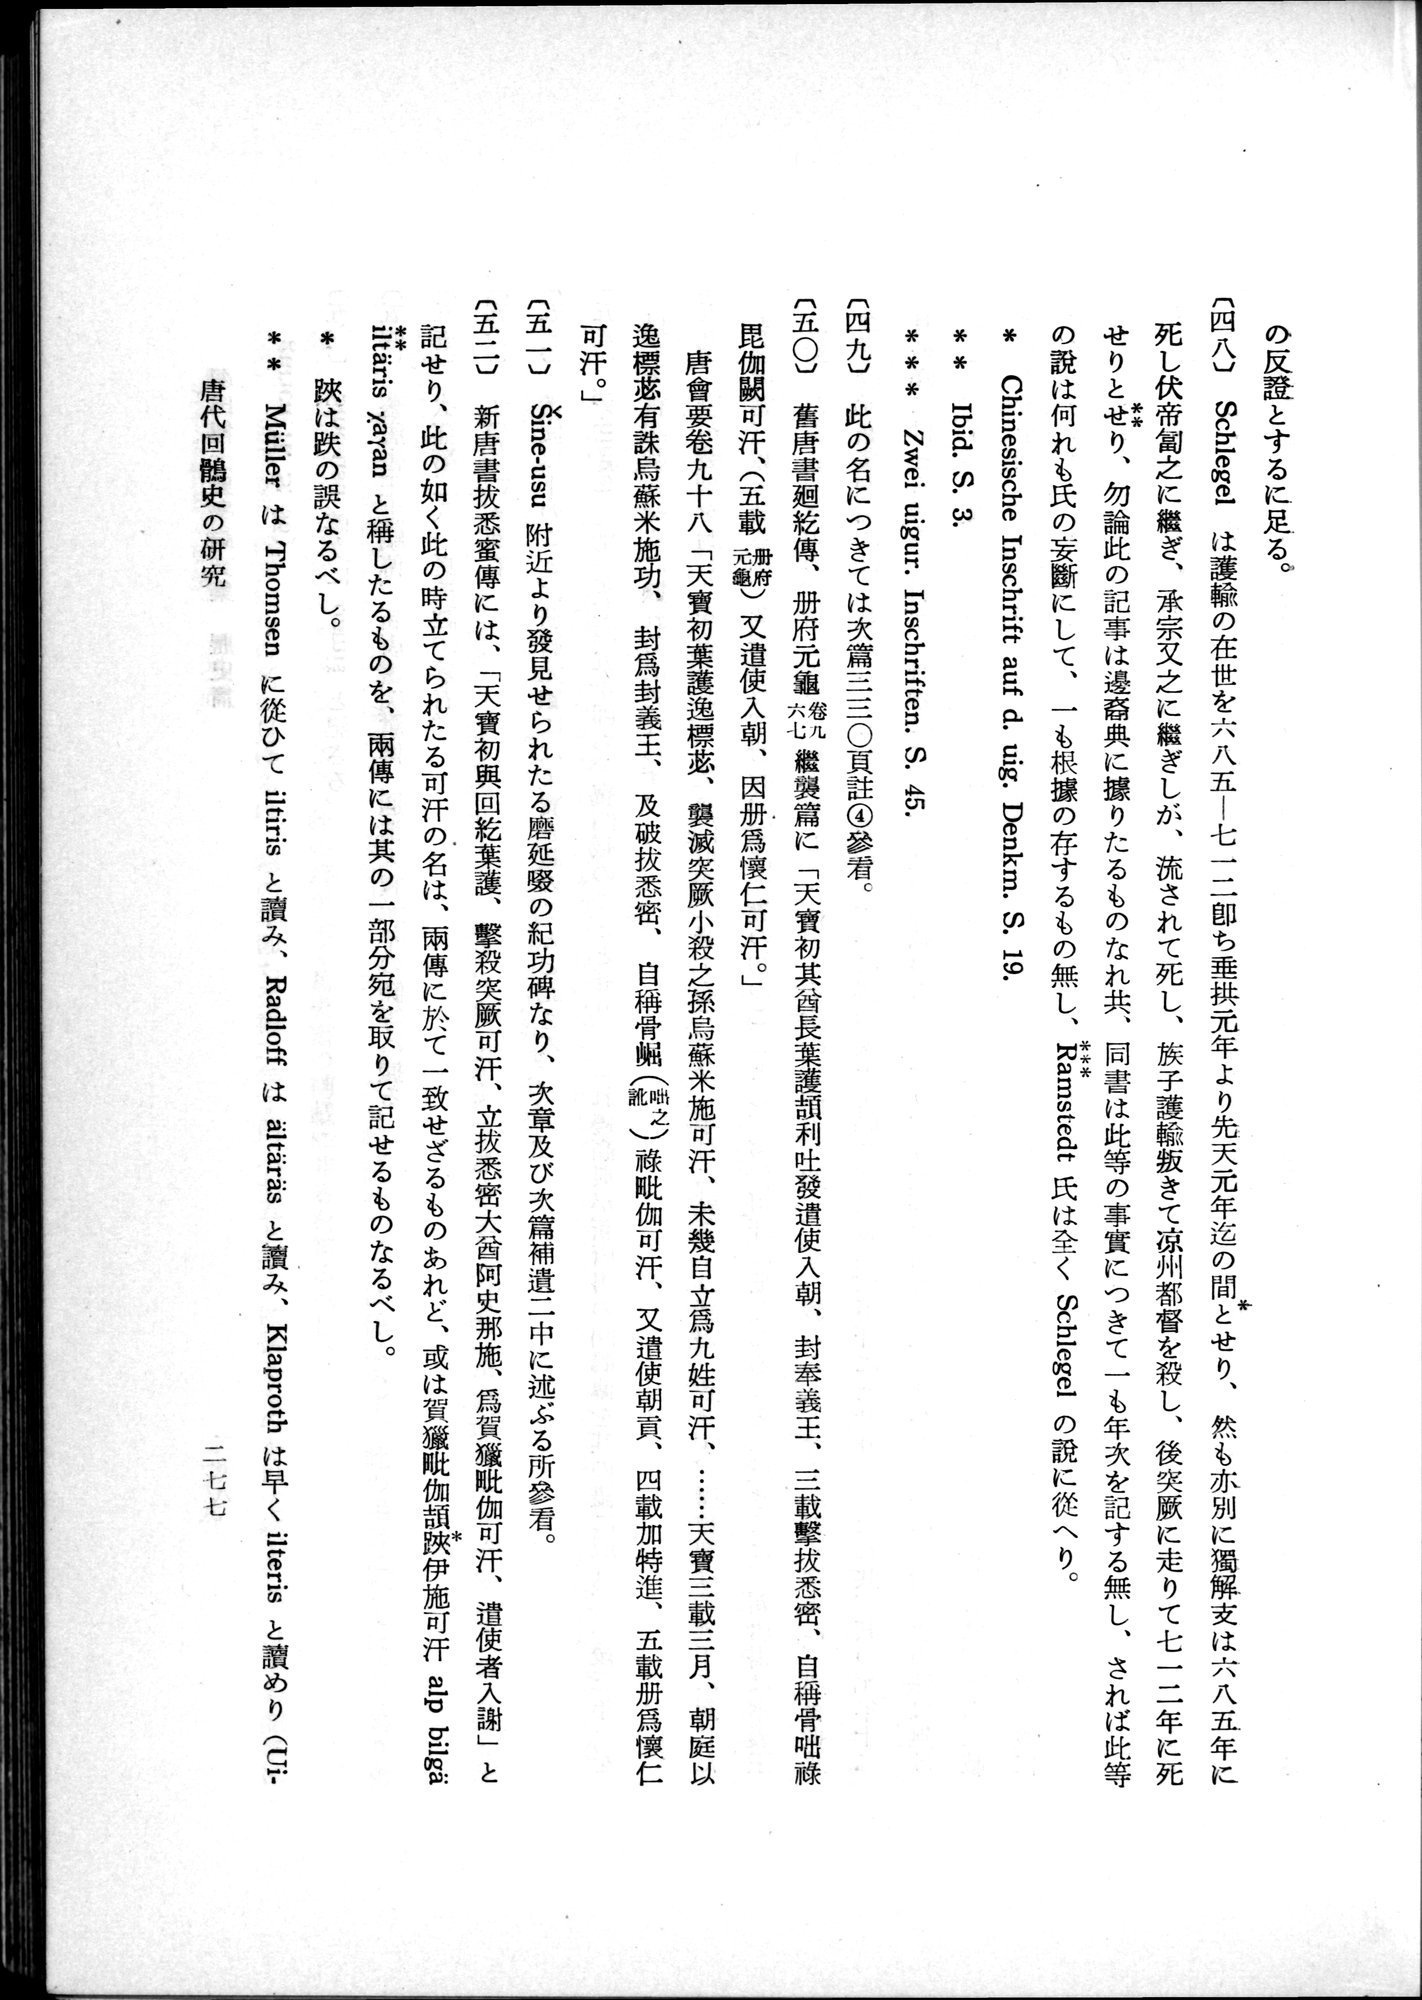 羽田博士史学論文集 : vol.1 / Page 315 (Grayscale High Resolution Image)